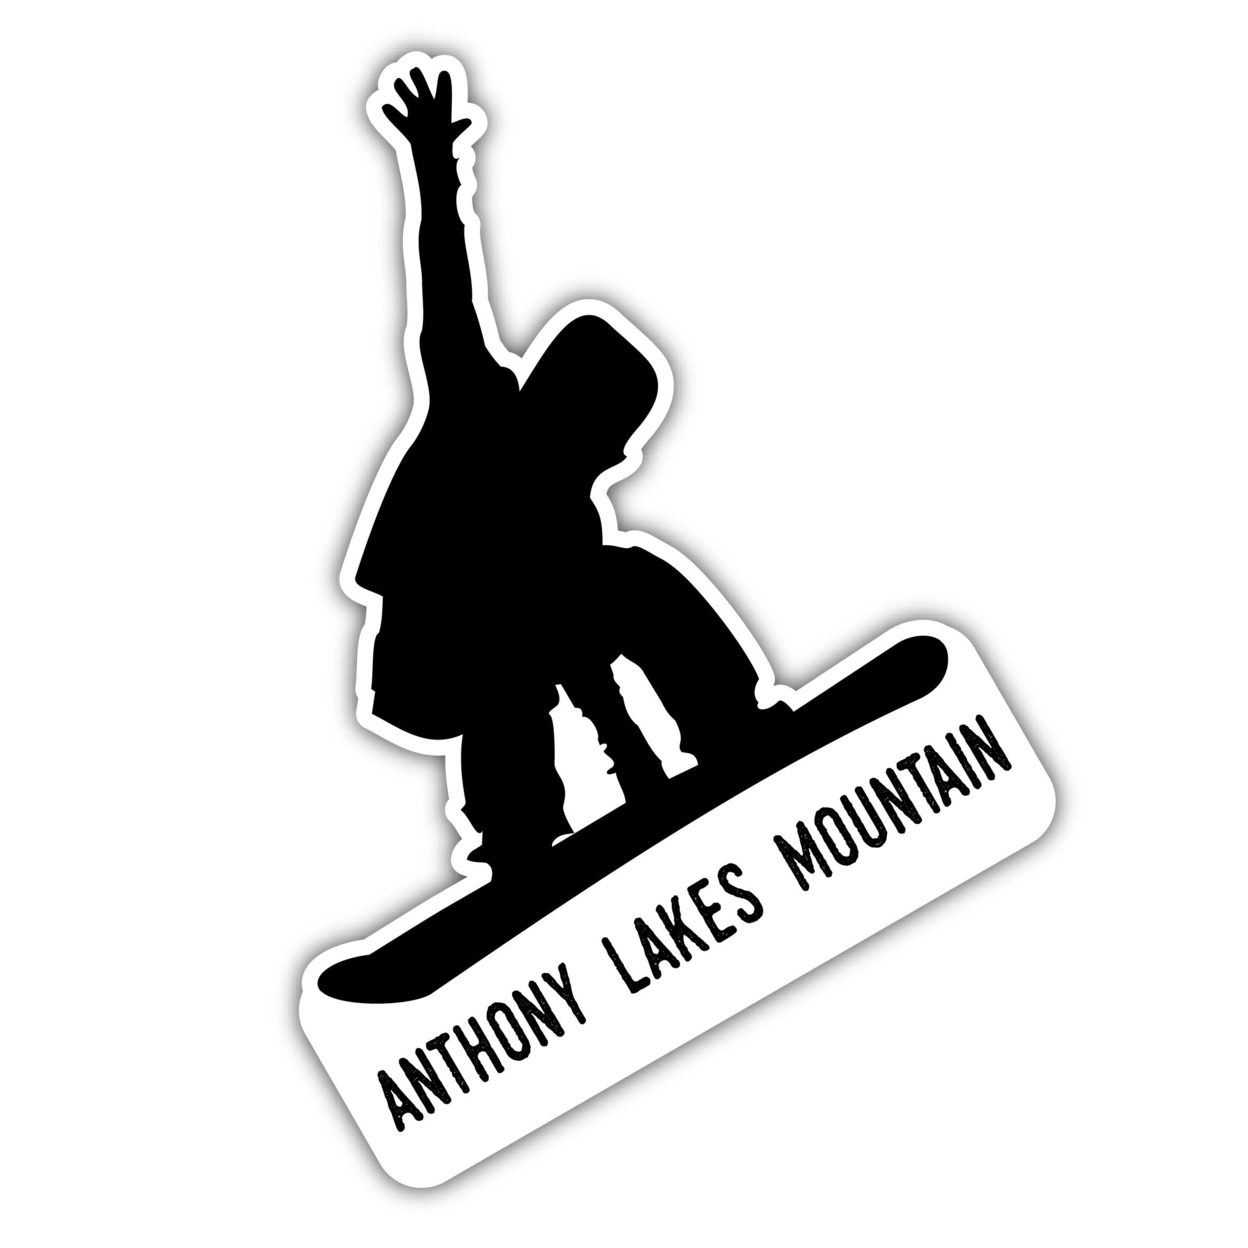 Anthony Lakes Mountain Oregon Ski Adventures Souvenir Approximately 5 X 2.5-Inch Vinyl Decal Sticker Goggle Design